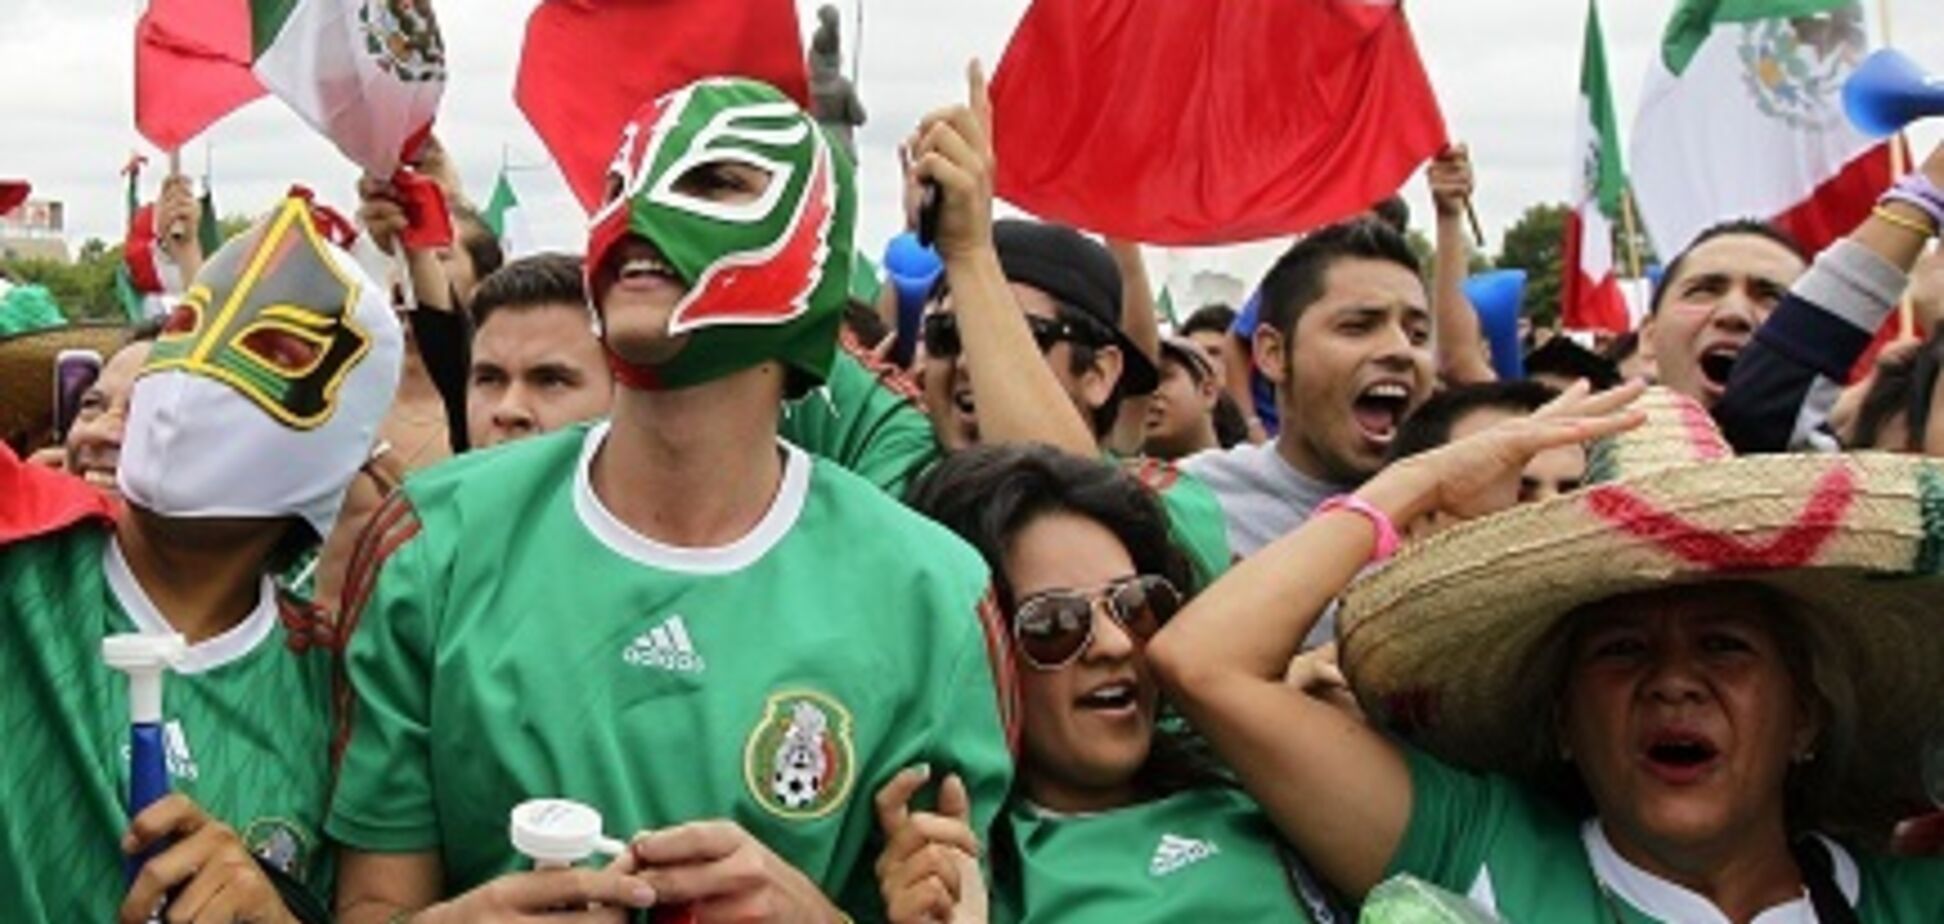 У Мексиці перегляд матчу ЧС-2018 закінчився трагедією